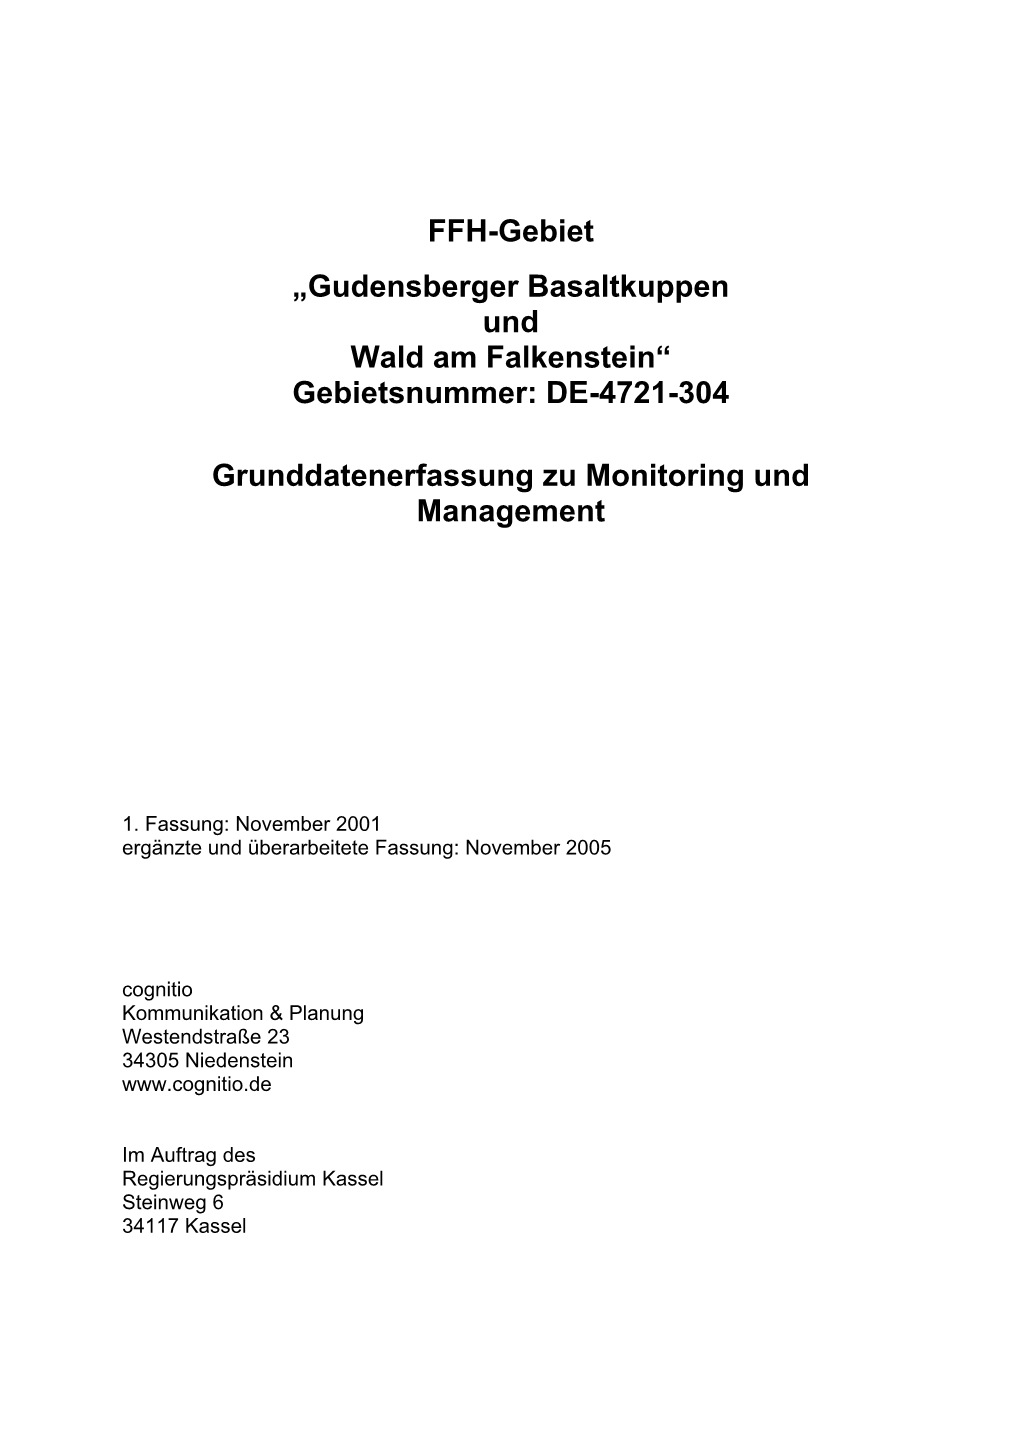 FFH-Gebiet „Gudensberger Basaltkuppen Und Wald Am Falkenstein“ (Nr